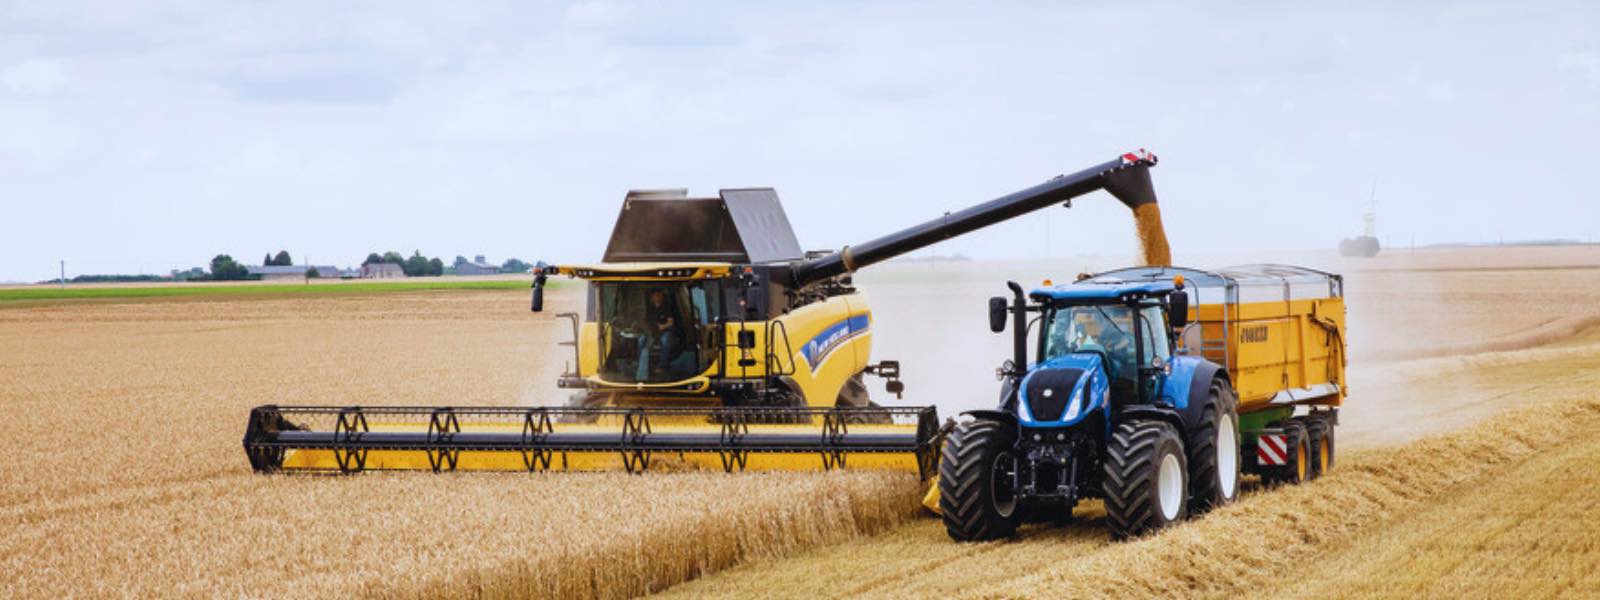 Ubezpieczenie maszyn rolniczych — jak ubezpieczyć traktor, ciągnik, kombajn?